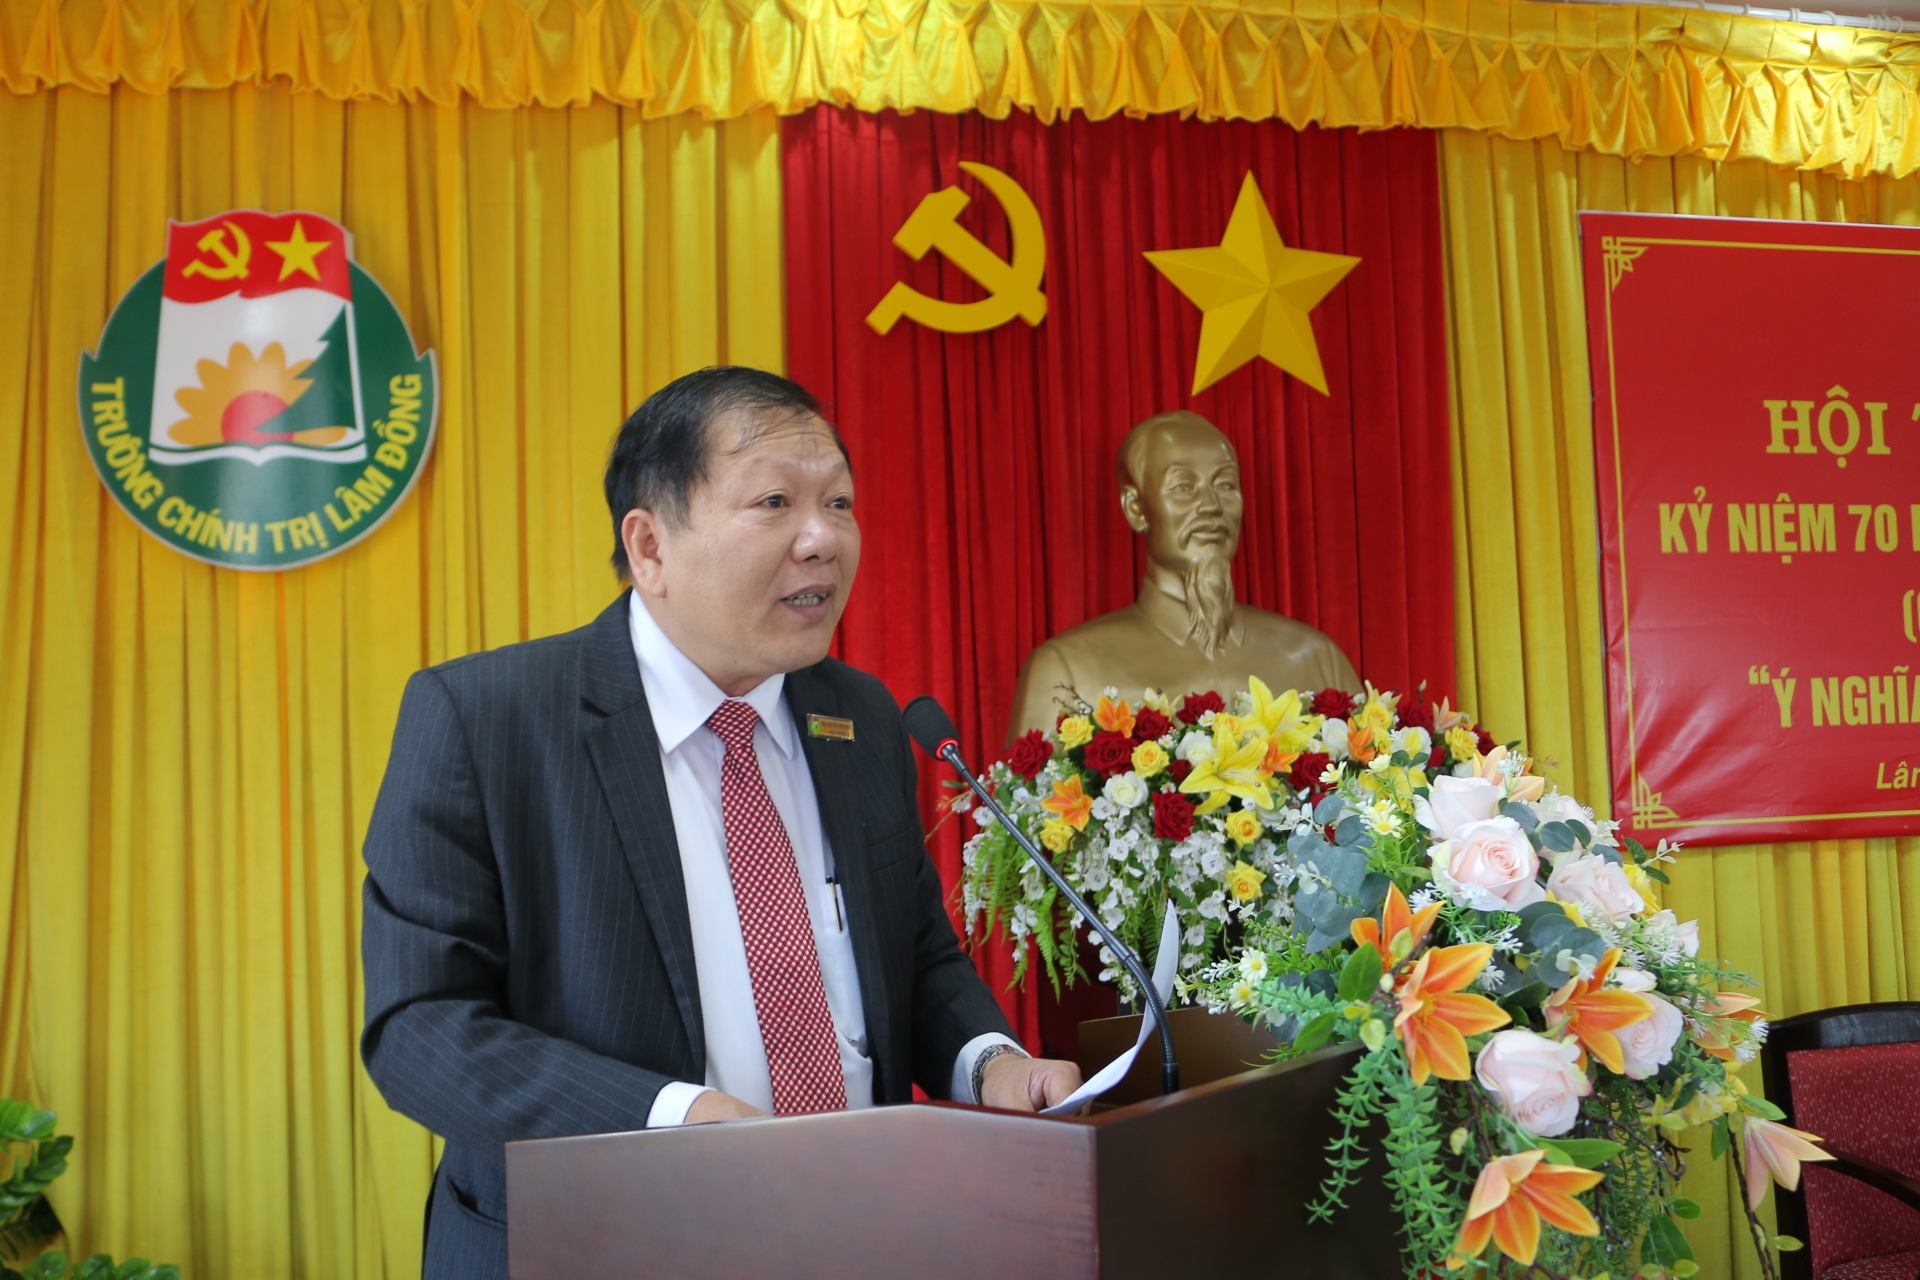 Đồng chí Nguyễn Vĩnh Phúc – Hiệu trưởng Trường Chính trị tỉnh phát biểu đề dẫn hội thảo